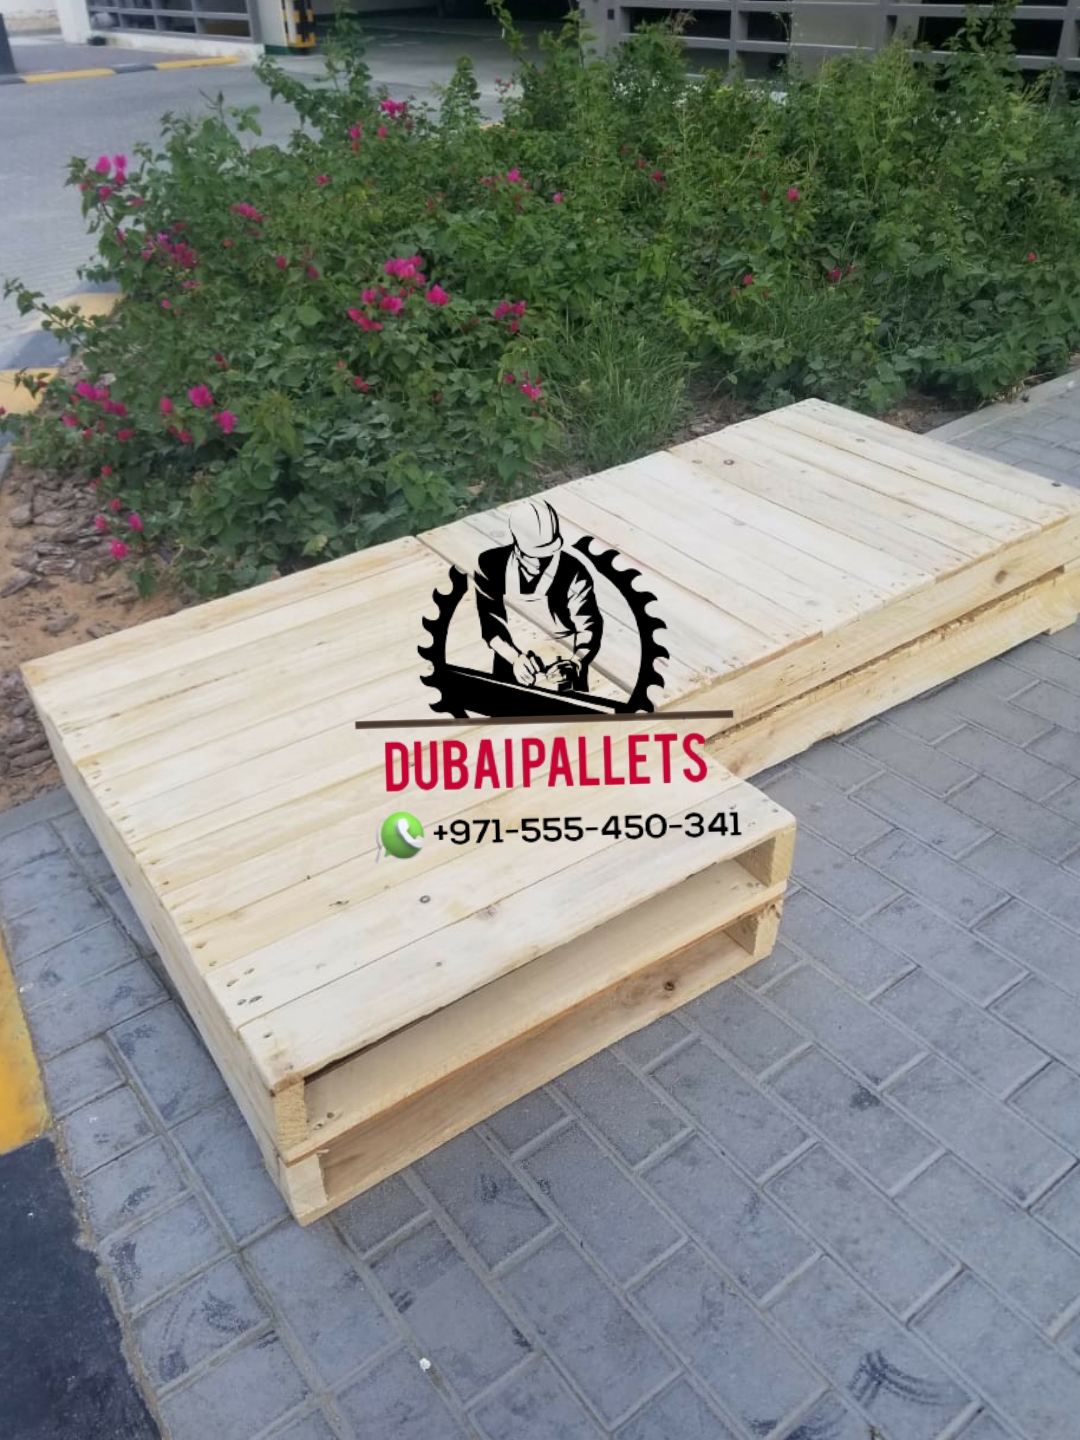 Dubai pallets wooden 0555450341